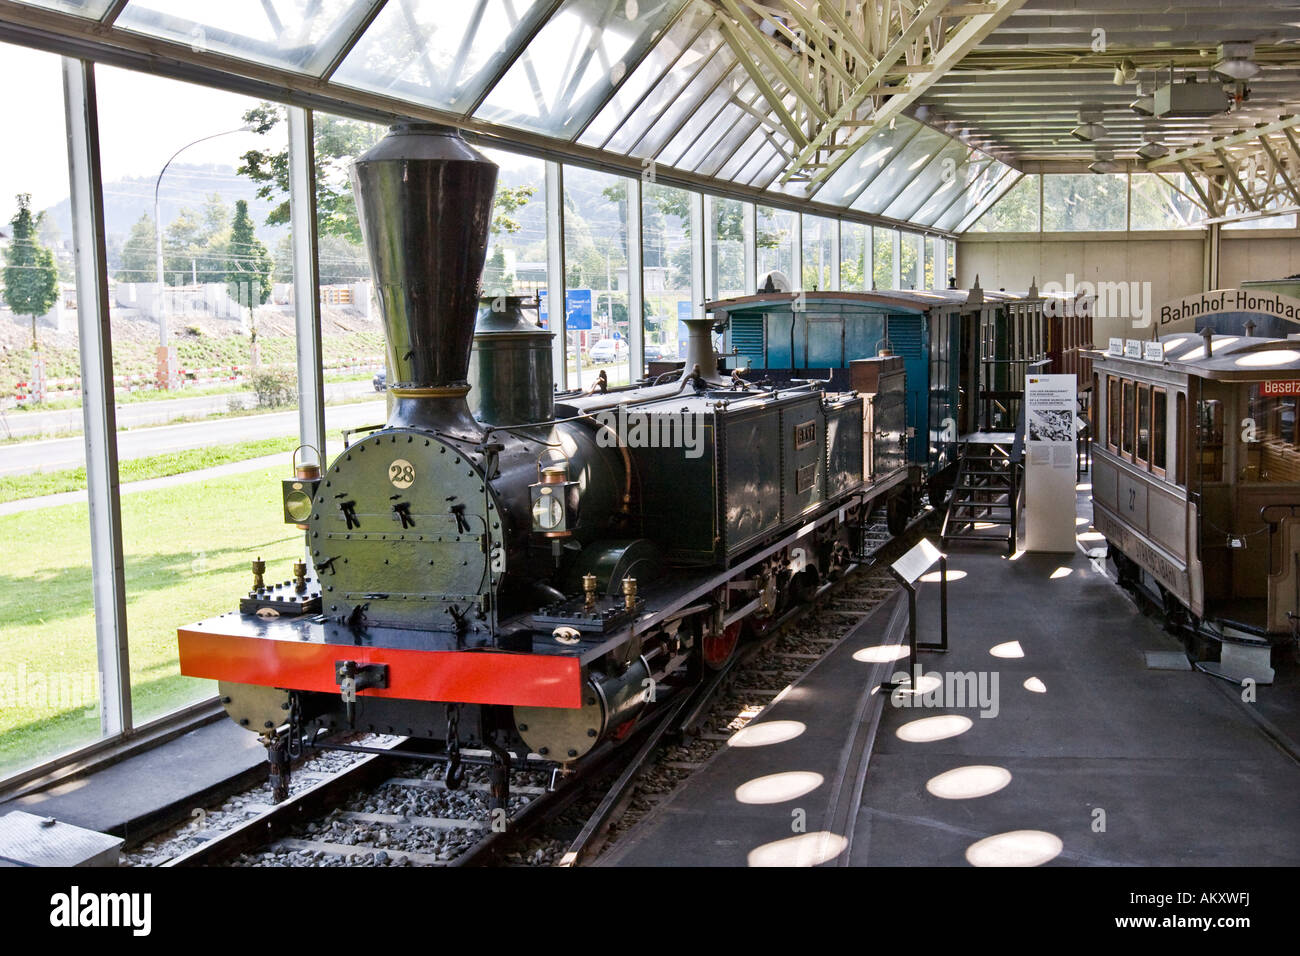 Alte Eisenbahn, Verkehr-Haus der Schweiz, Luzern, Kanton Luzern, Schweiz  Stockfotografie - Alamy